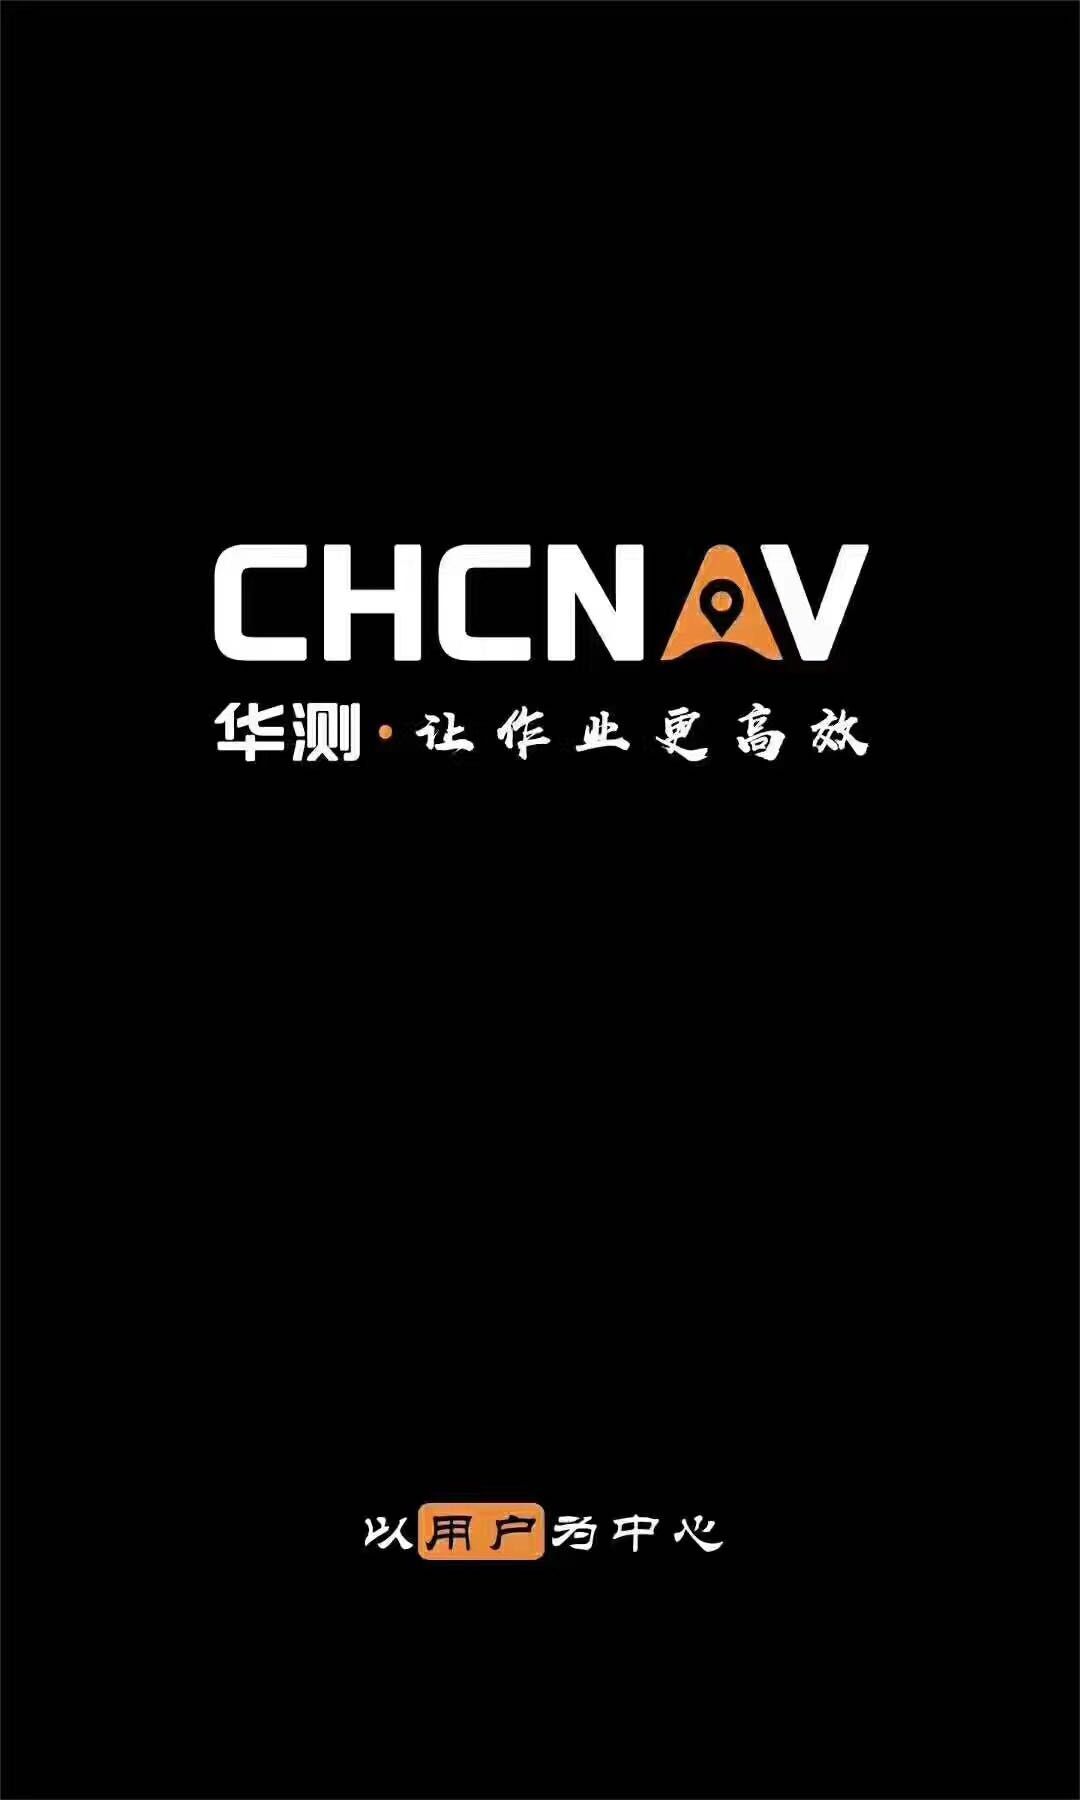 华测导航logo图片